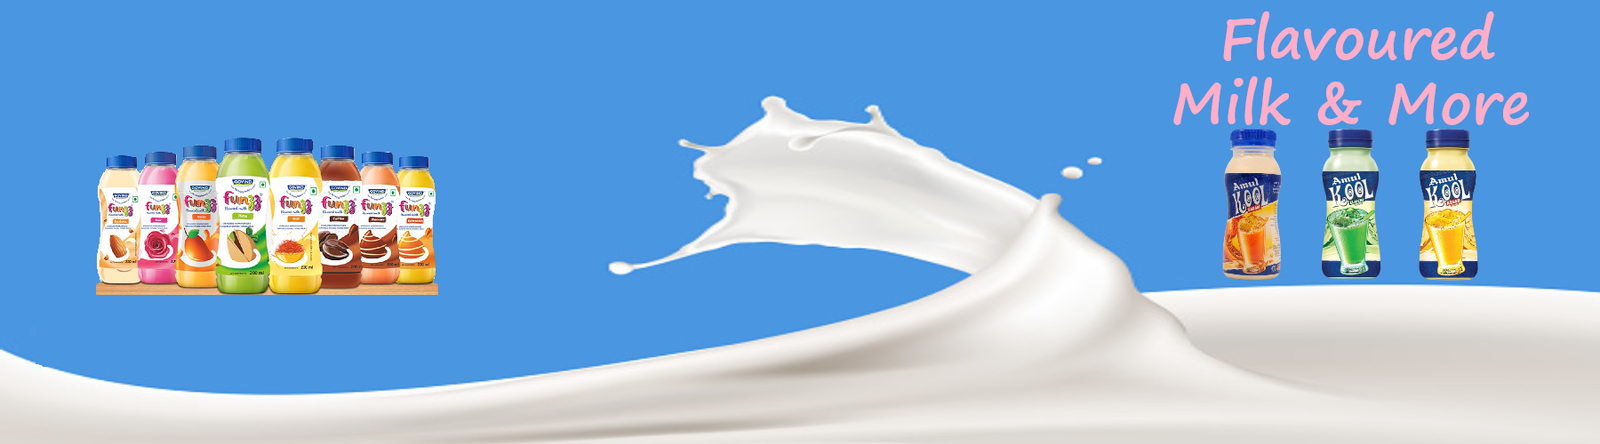 flavoured milk banner